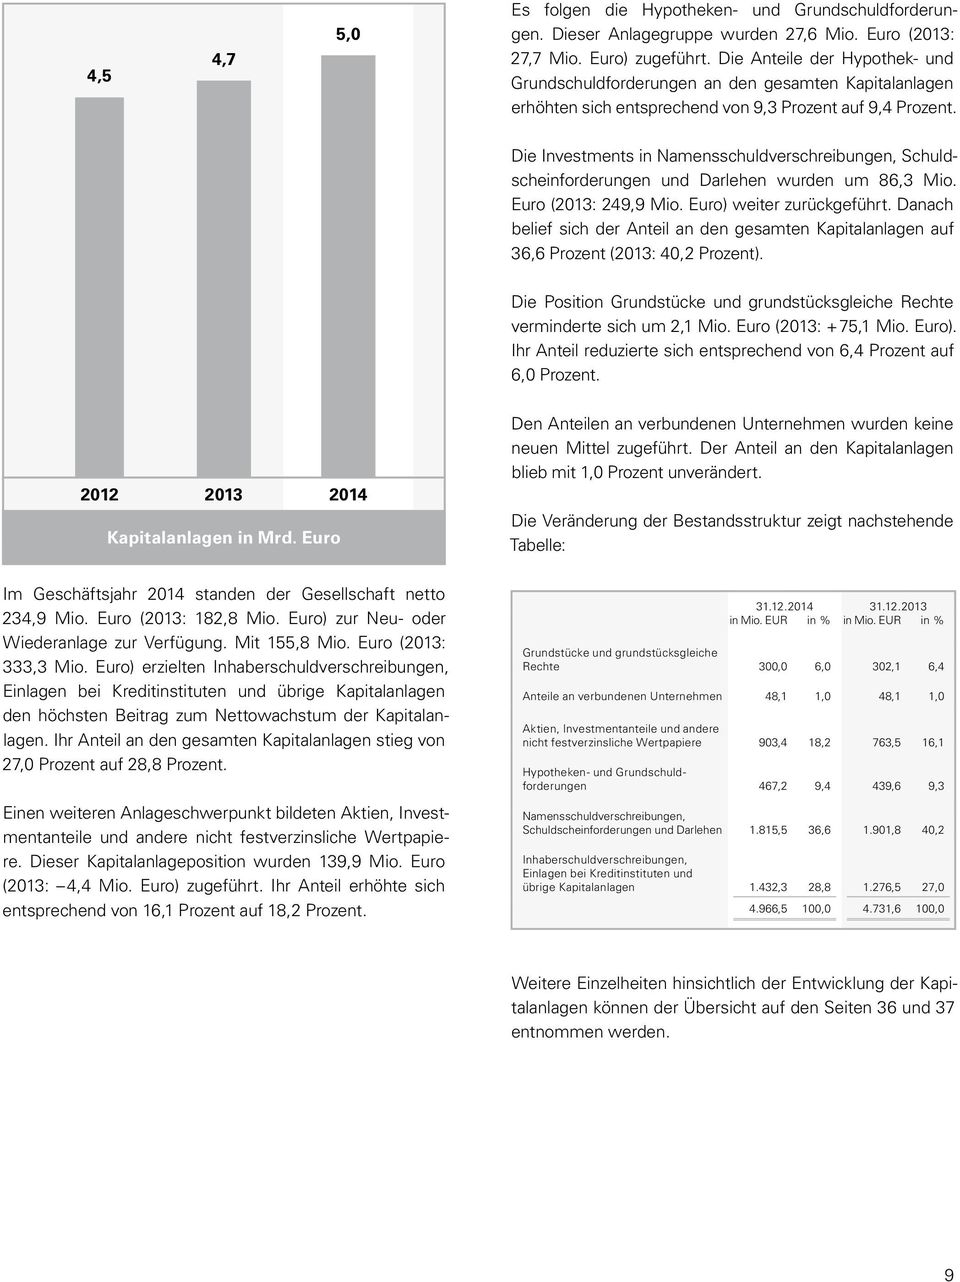 Die Investments in Namensschuldverschreibungen, Schuldscheinforderungen und Darlehen wurden um 86,3 Mio. Euro (2013: 249,9 Mio. Euro) weiter zurückgeführt.